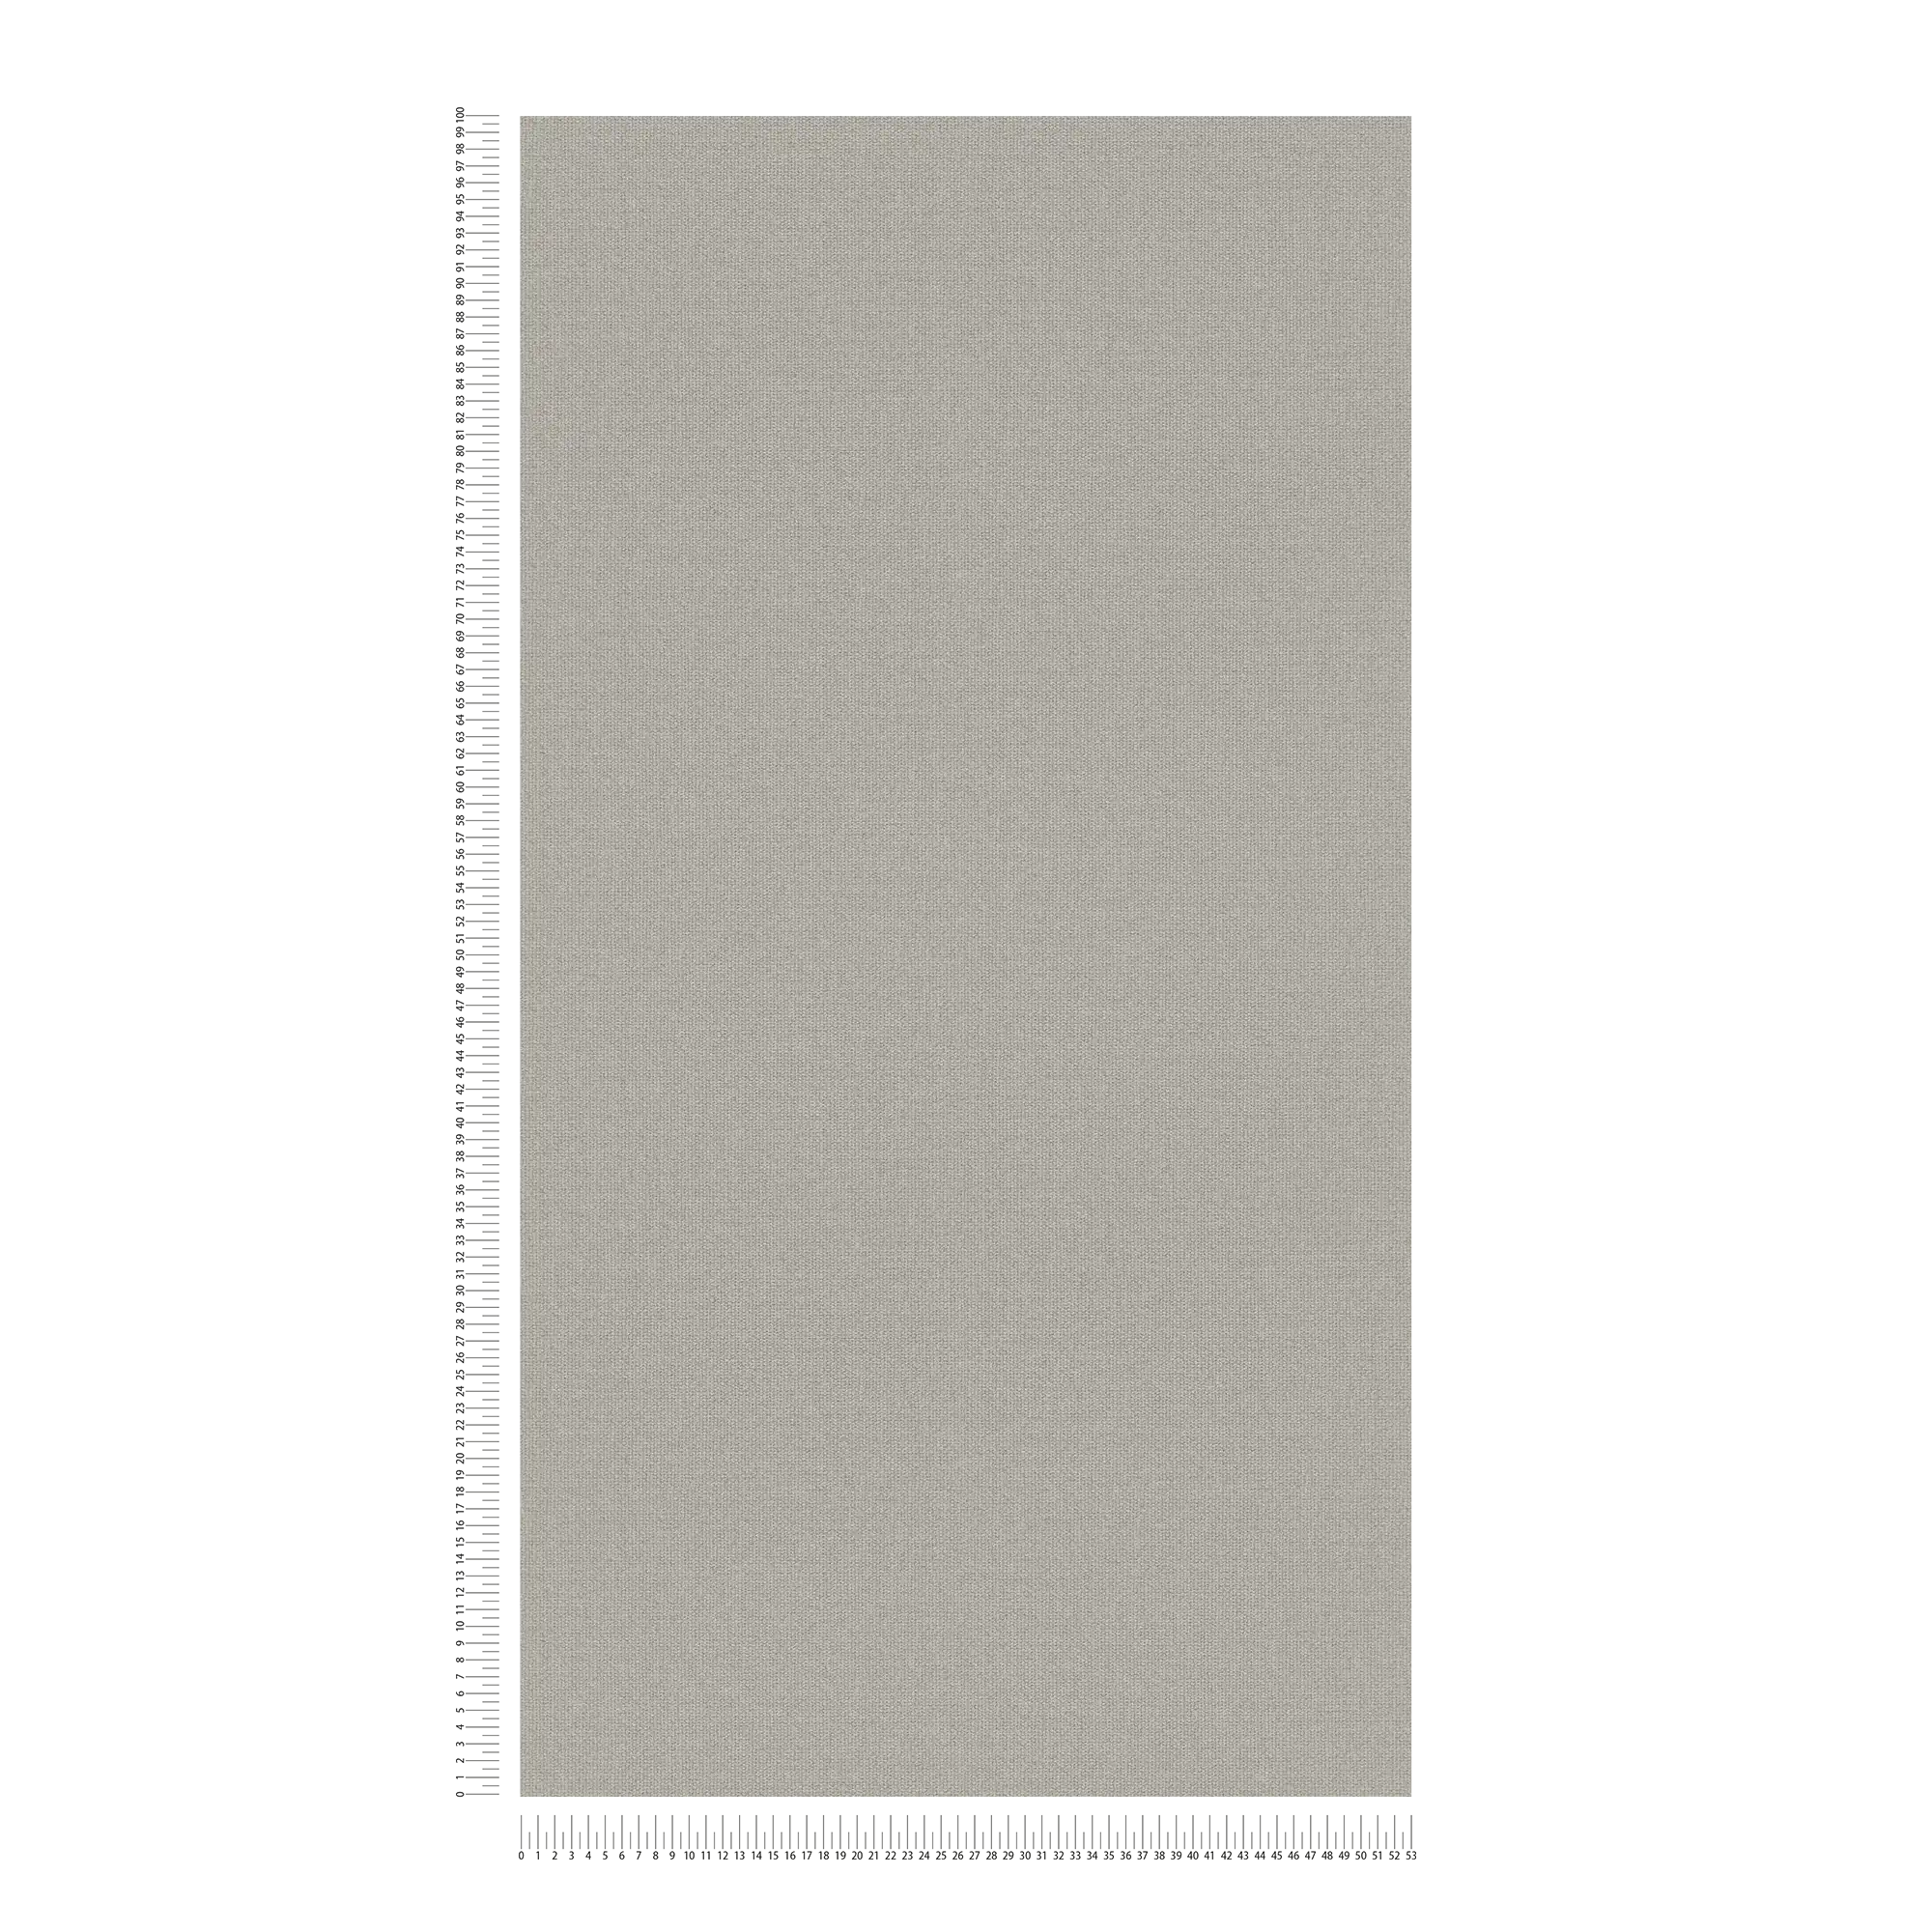             Vliesbehang linnenlook met structuurdetails, effen - grijs, beige
        